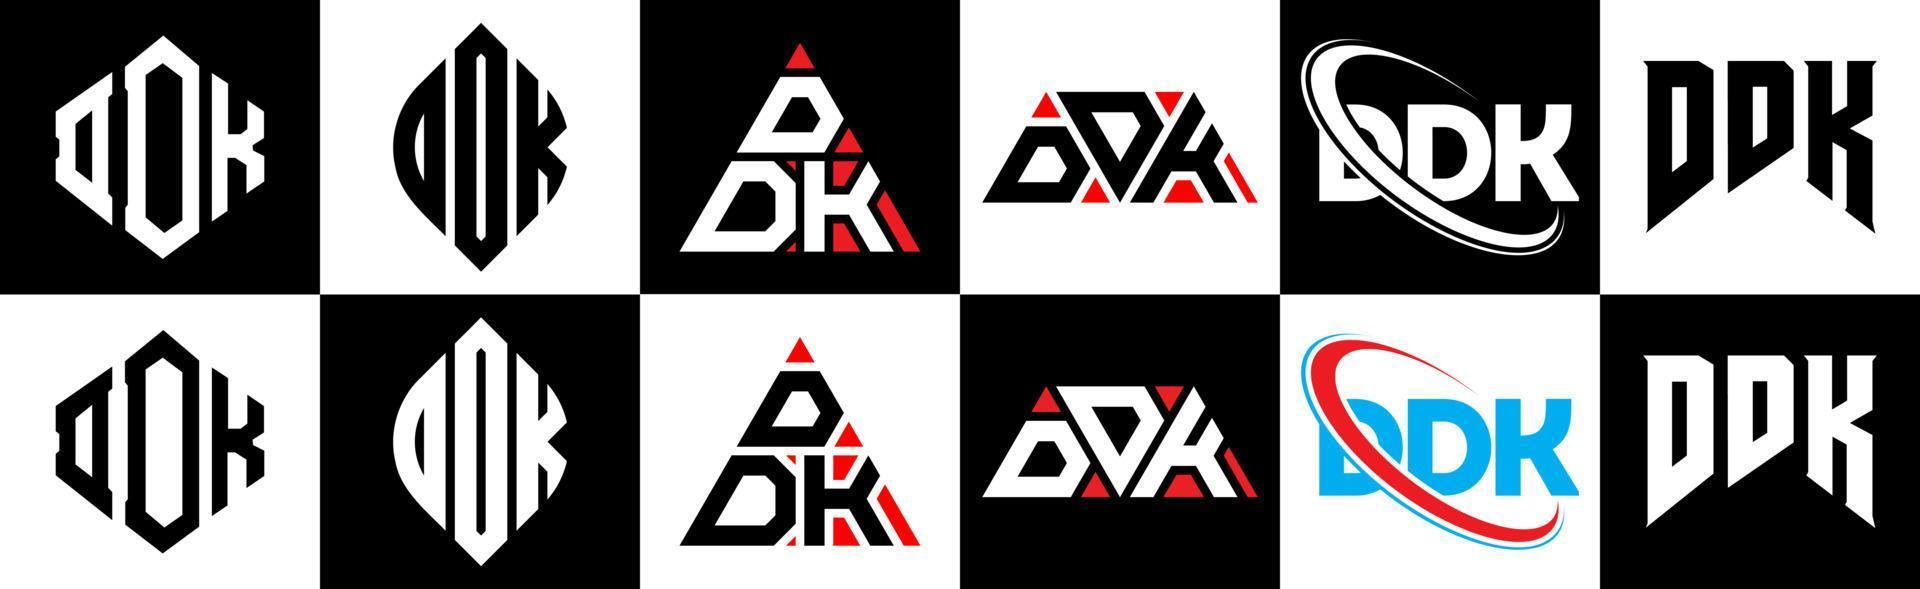 ddk-Buchstaben-Logo-Design in sechs Stilen. ddk-Polygon, Kreis, Dreieck, Sechseck, flacher und einfacher Stil mit schwarz-weißem Buchstabenlogo in einer Zeichenfläche. ddk minimalistisches und klassisches Logo vektor